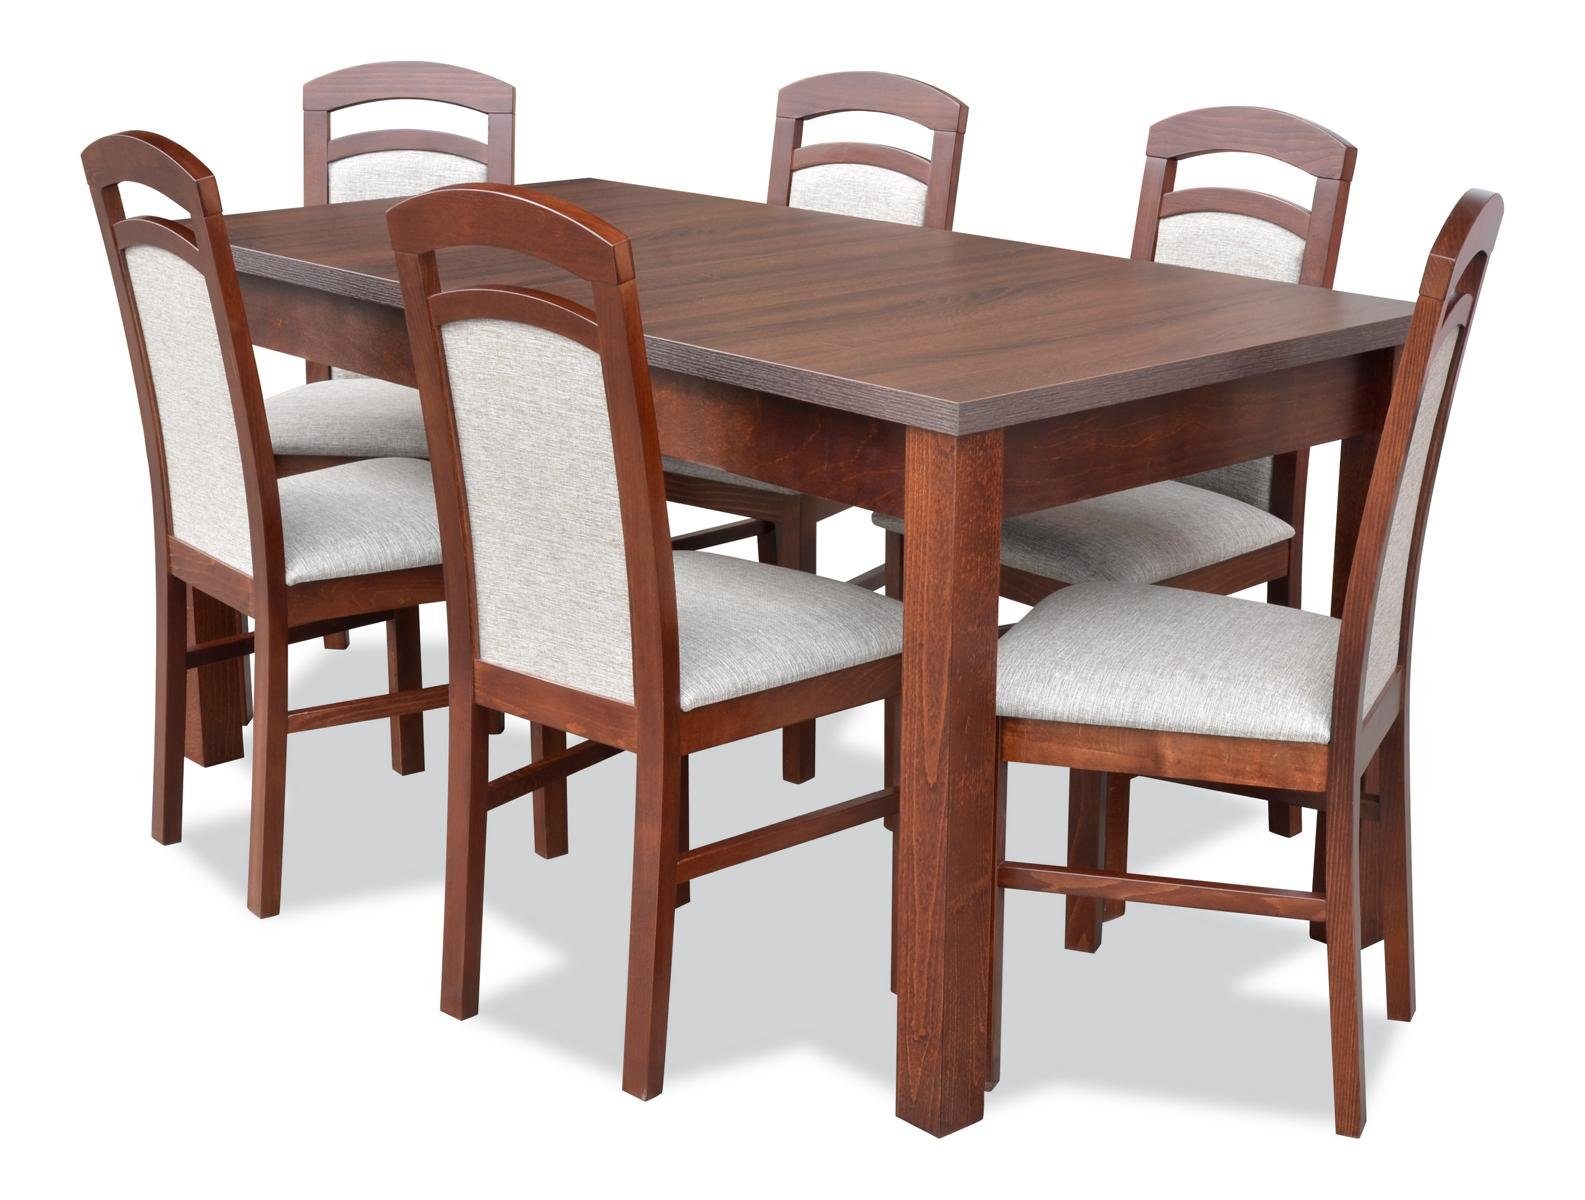 6 Garnitur Esszimmer Gruppe Set Ess Tisch Komplett JVmoebel Esstisch Essgruppe, 7tlg + Tische Stühle